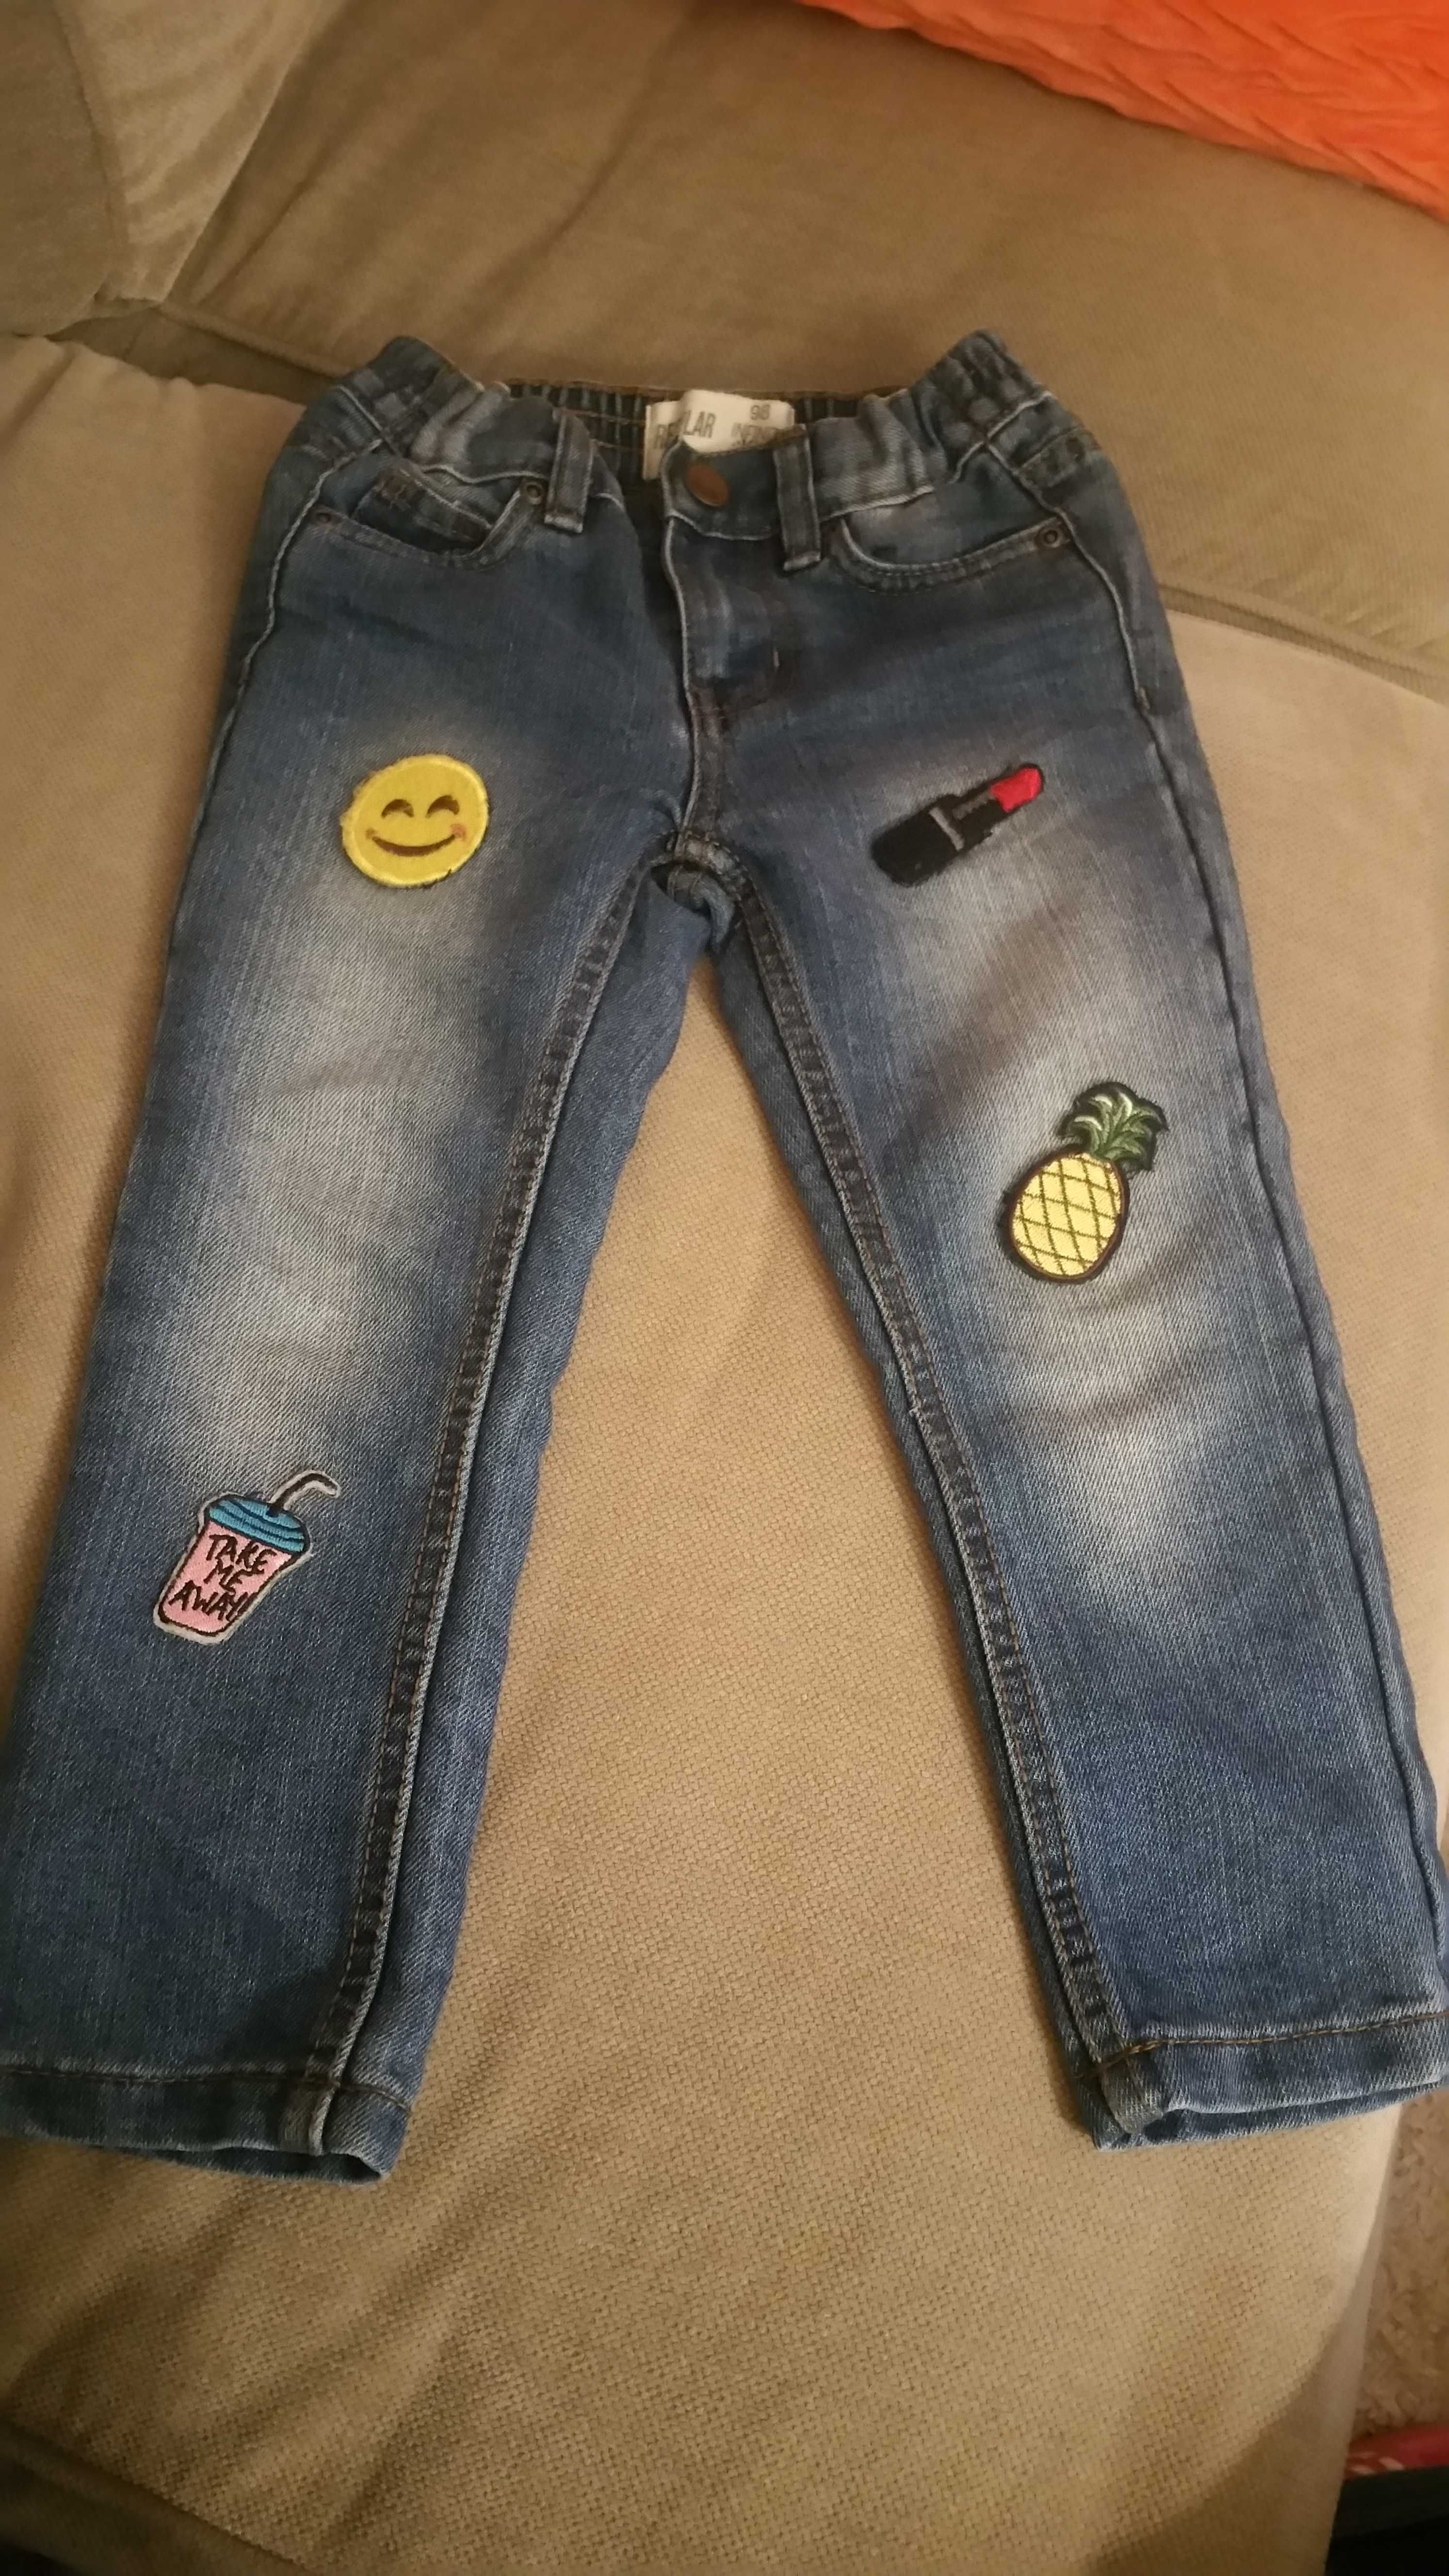 Spodnie jeansowe dla dziewczynki